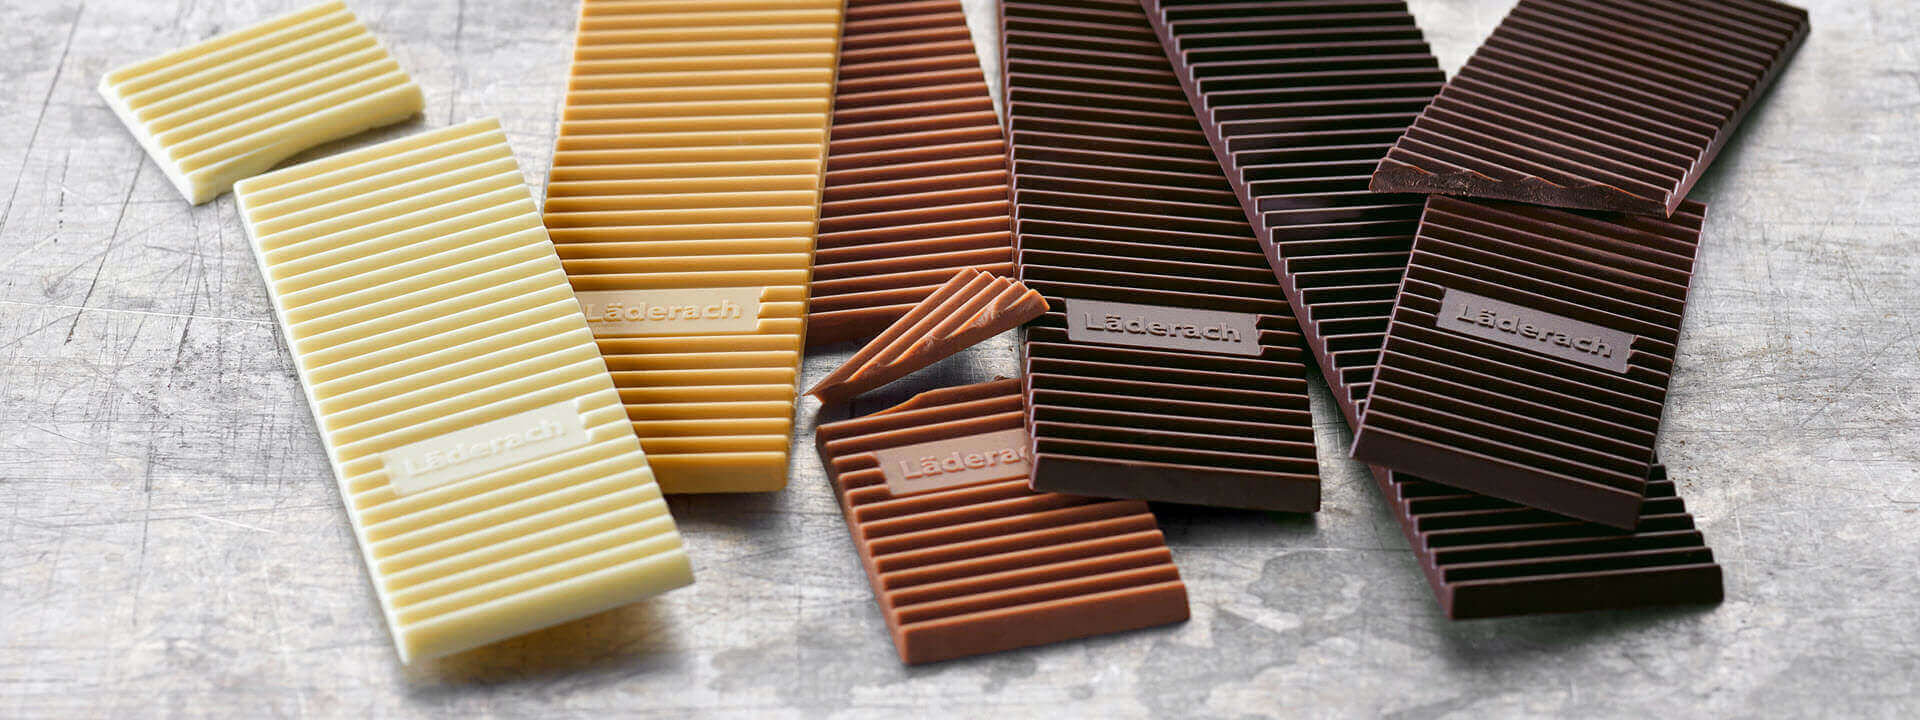 Brut, authentique et moderne: Läderach réinterprète la tablette de chocolat.